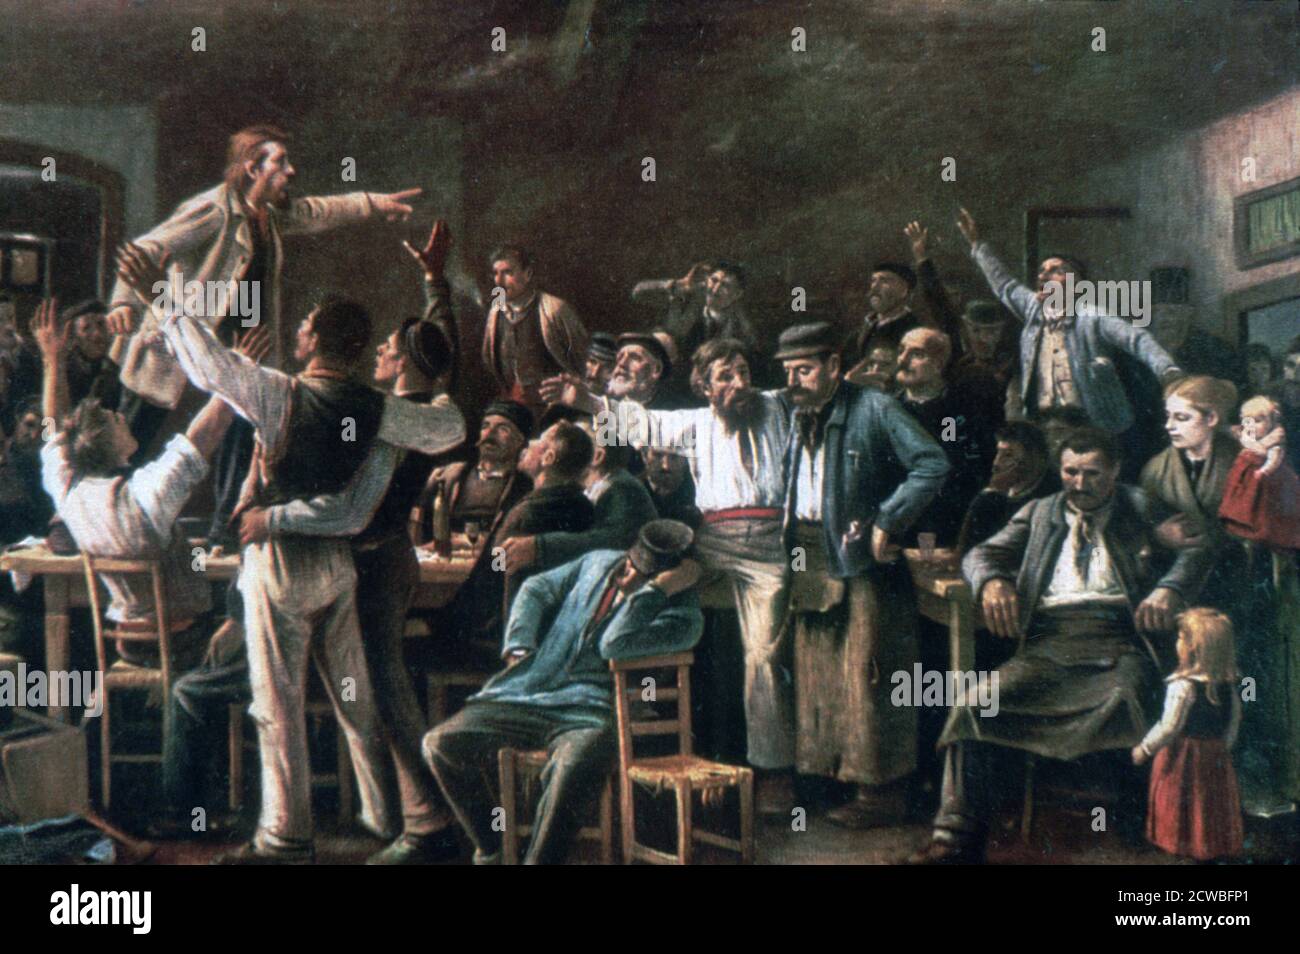 Strike“, 1895. Künstler: Mihaly Munkacsy. Mihaly Munkacsy (1844-1900) war ein ungarischer Maler. Mit seinen Genrebildern und großformatigen biblischen Gemälden erlangte er internationale Reputation. Stockfoto